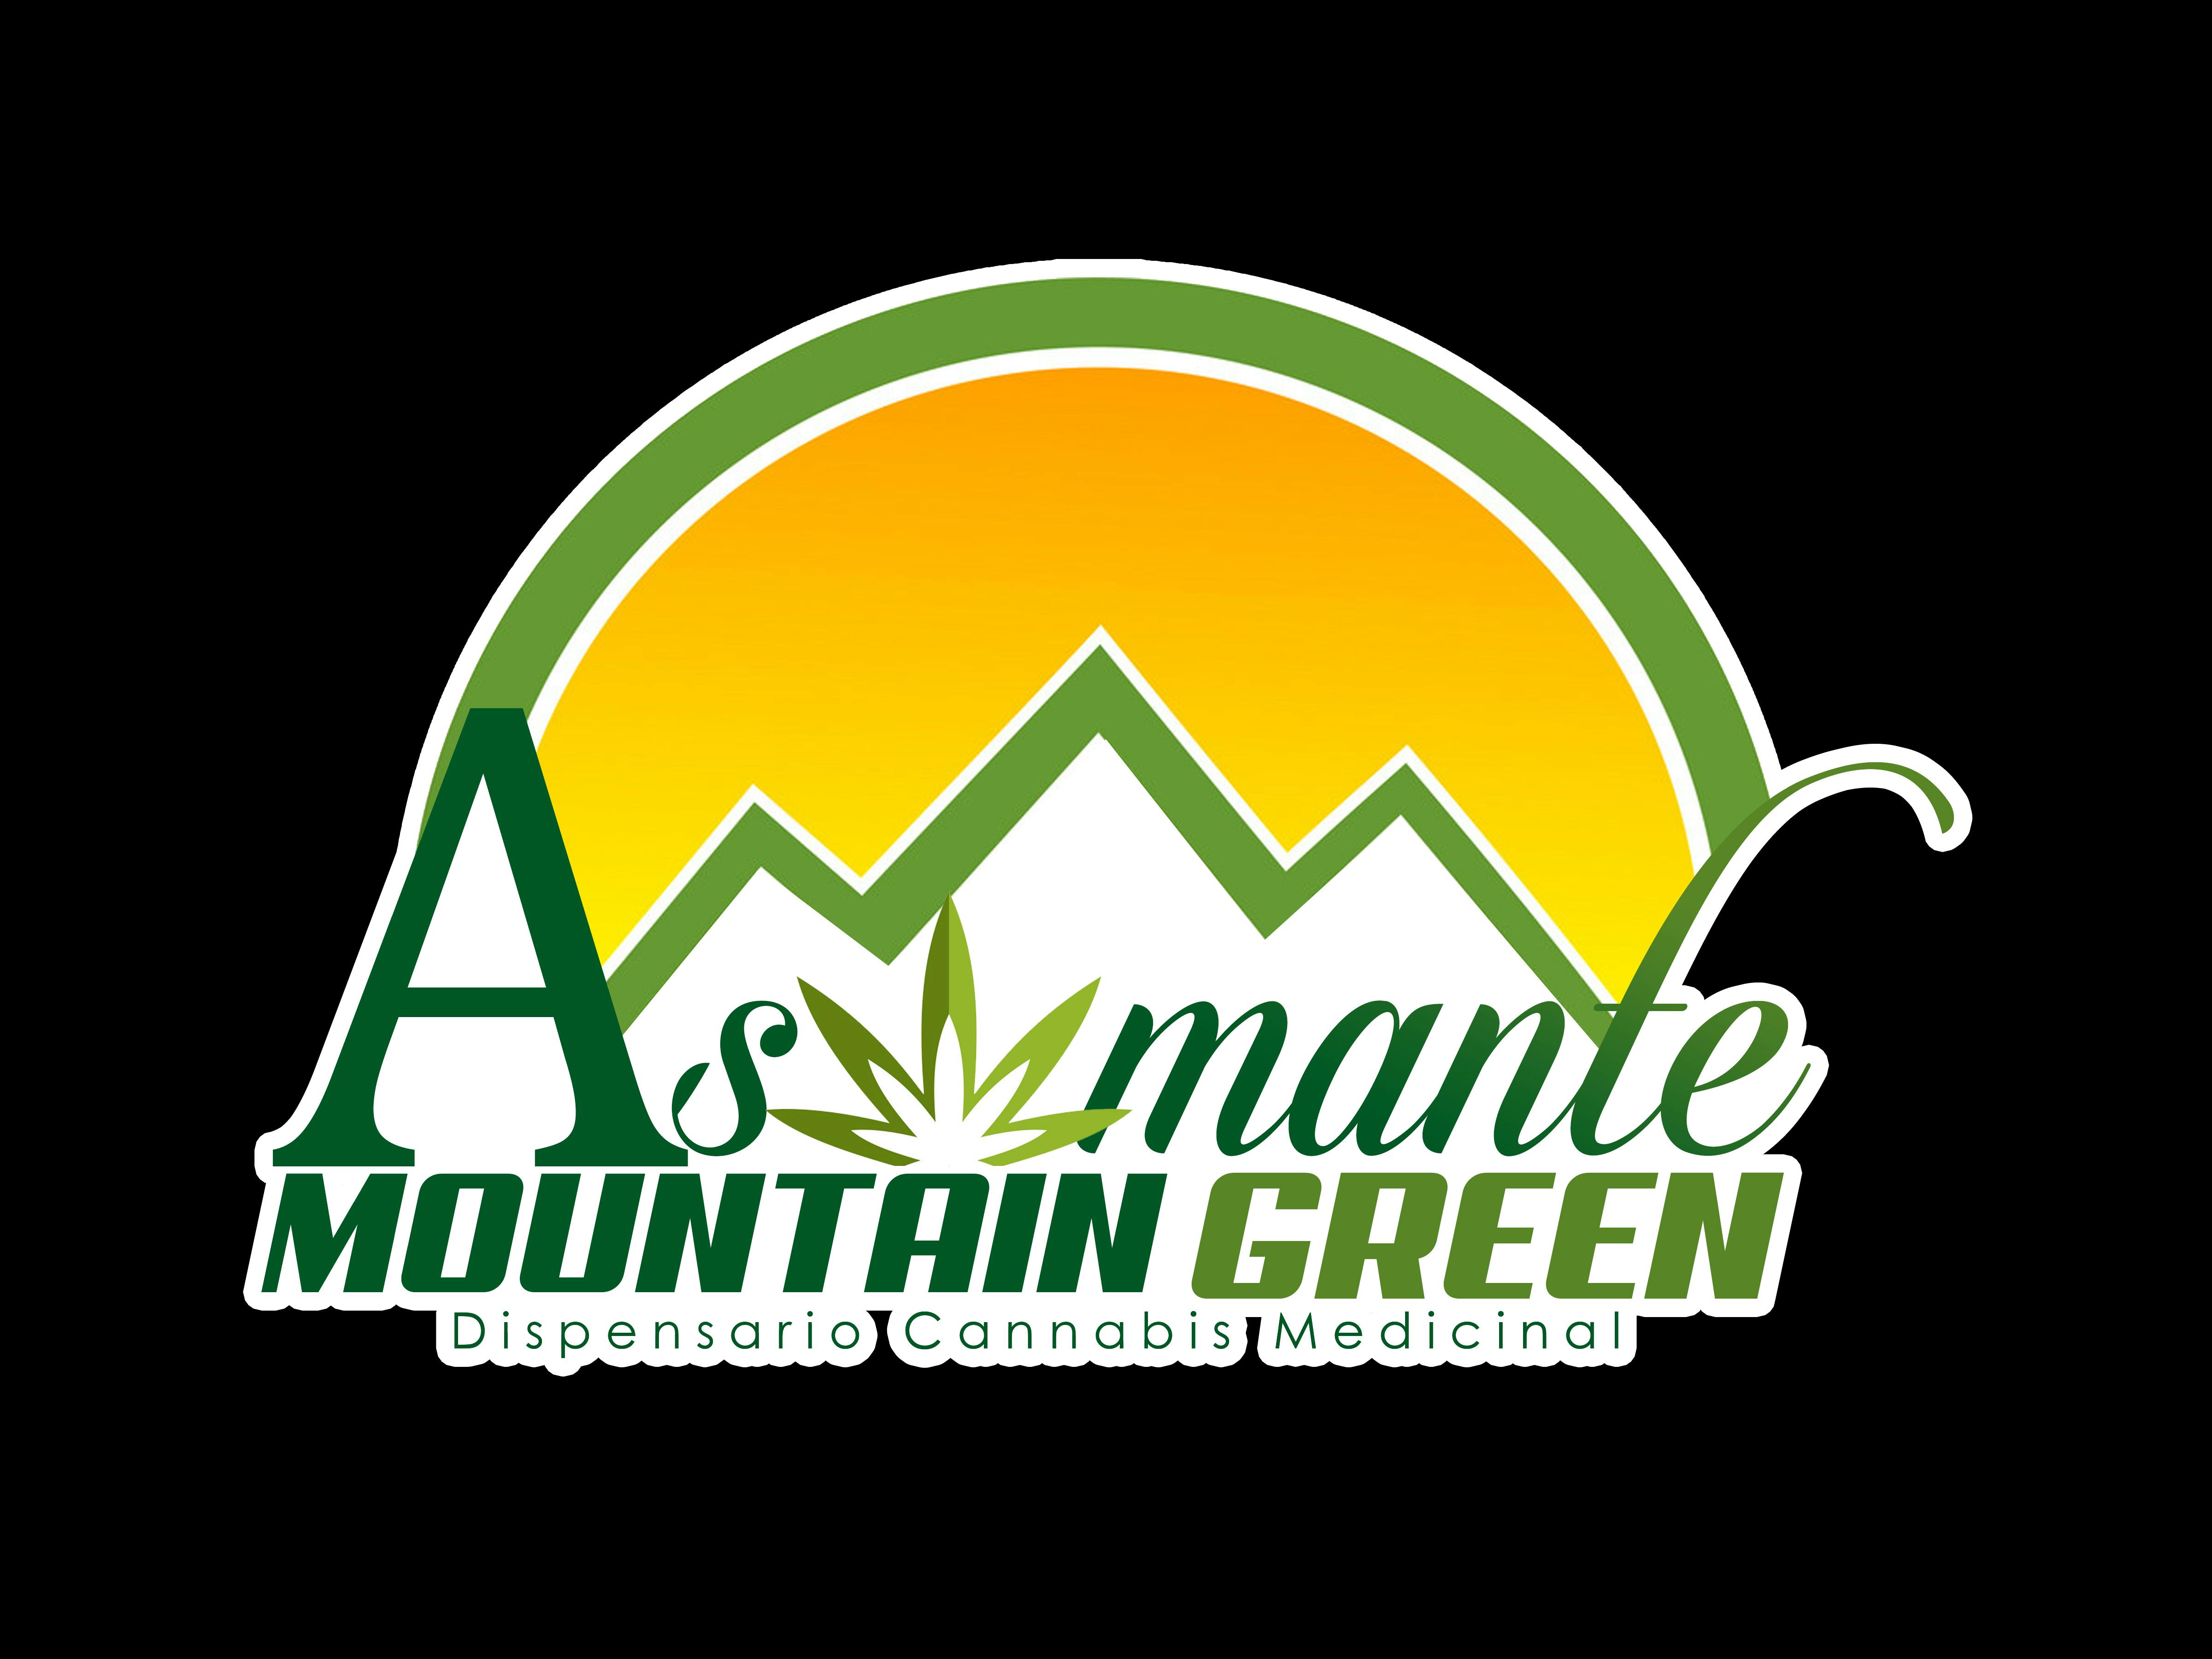 Asomante Mountain Green logo